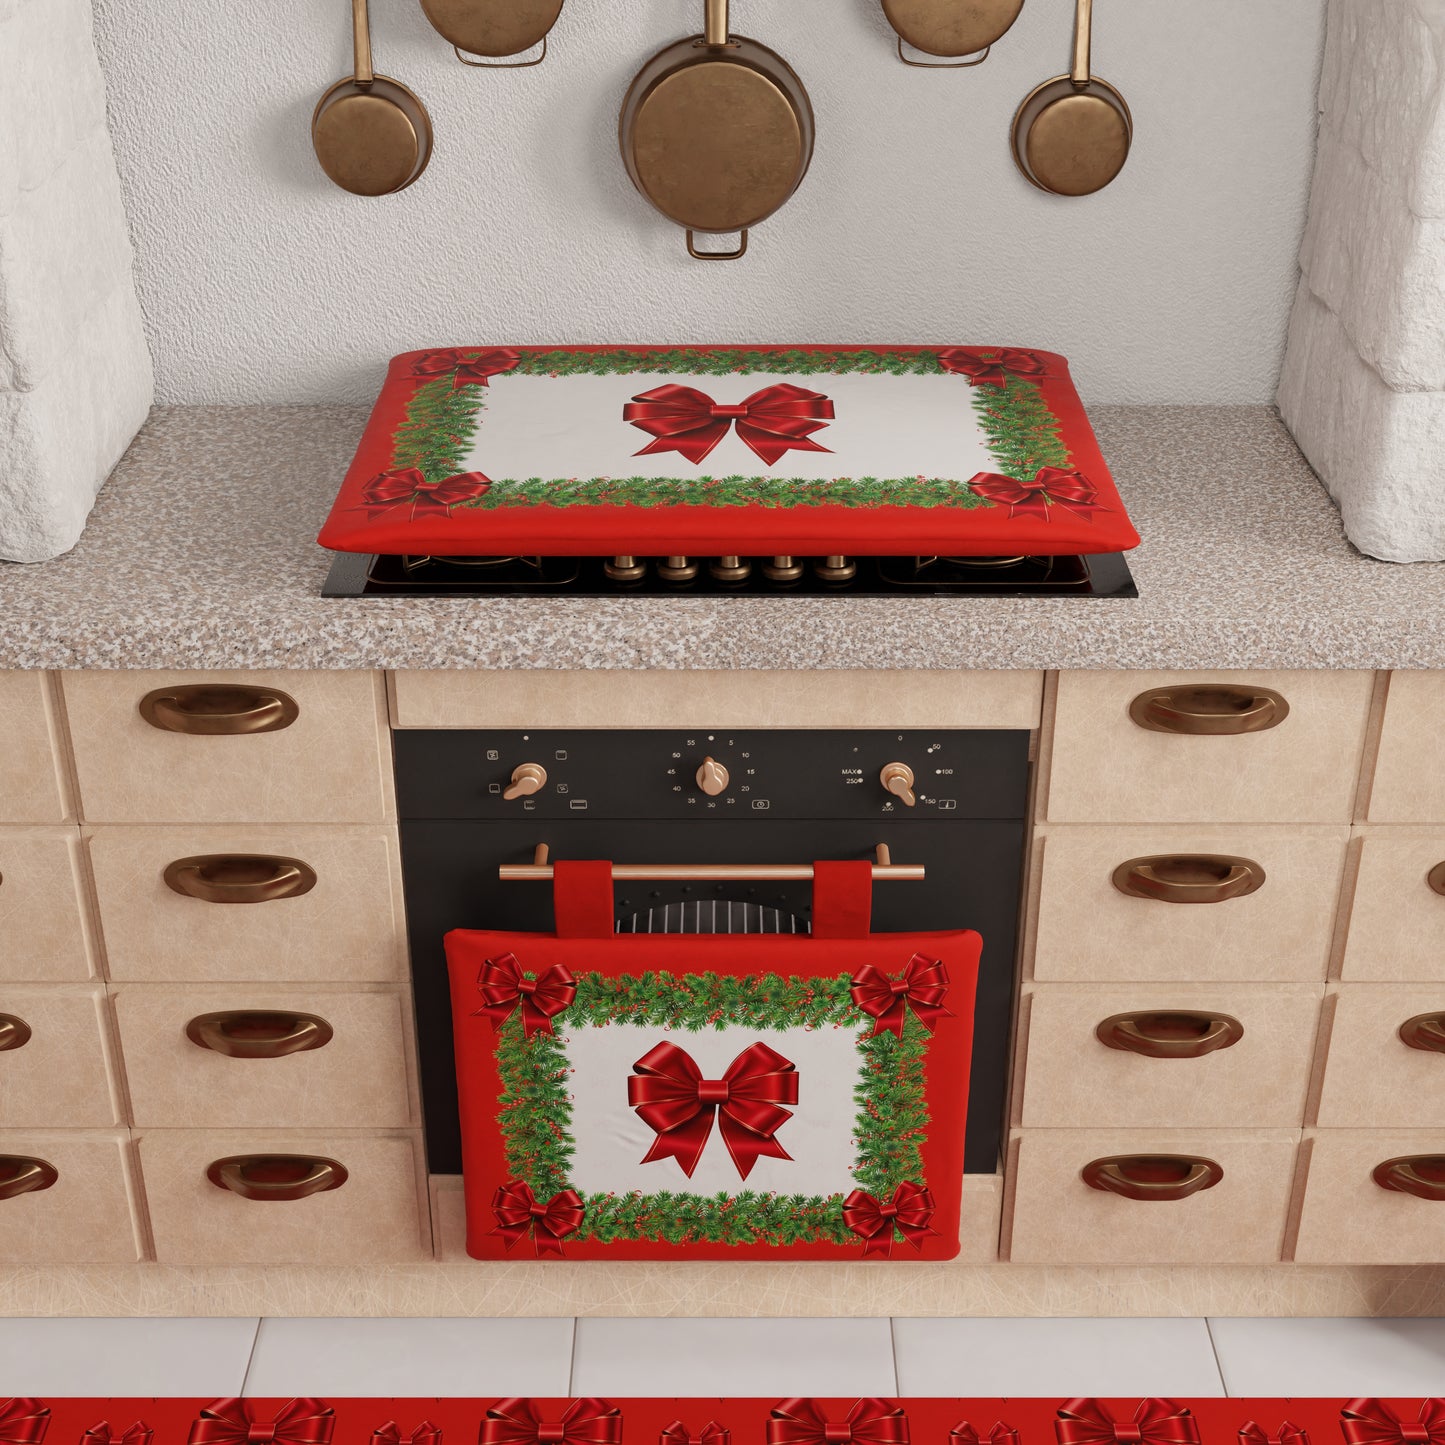 Copriforno Natalizio per Cucina in Stampa Digitale Fiocco Rosso